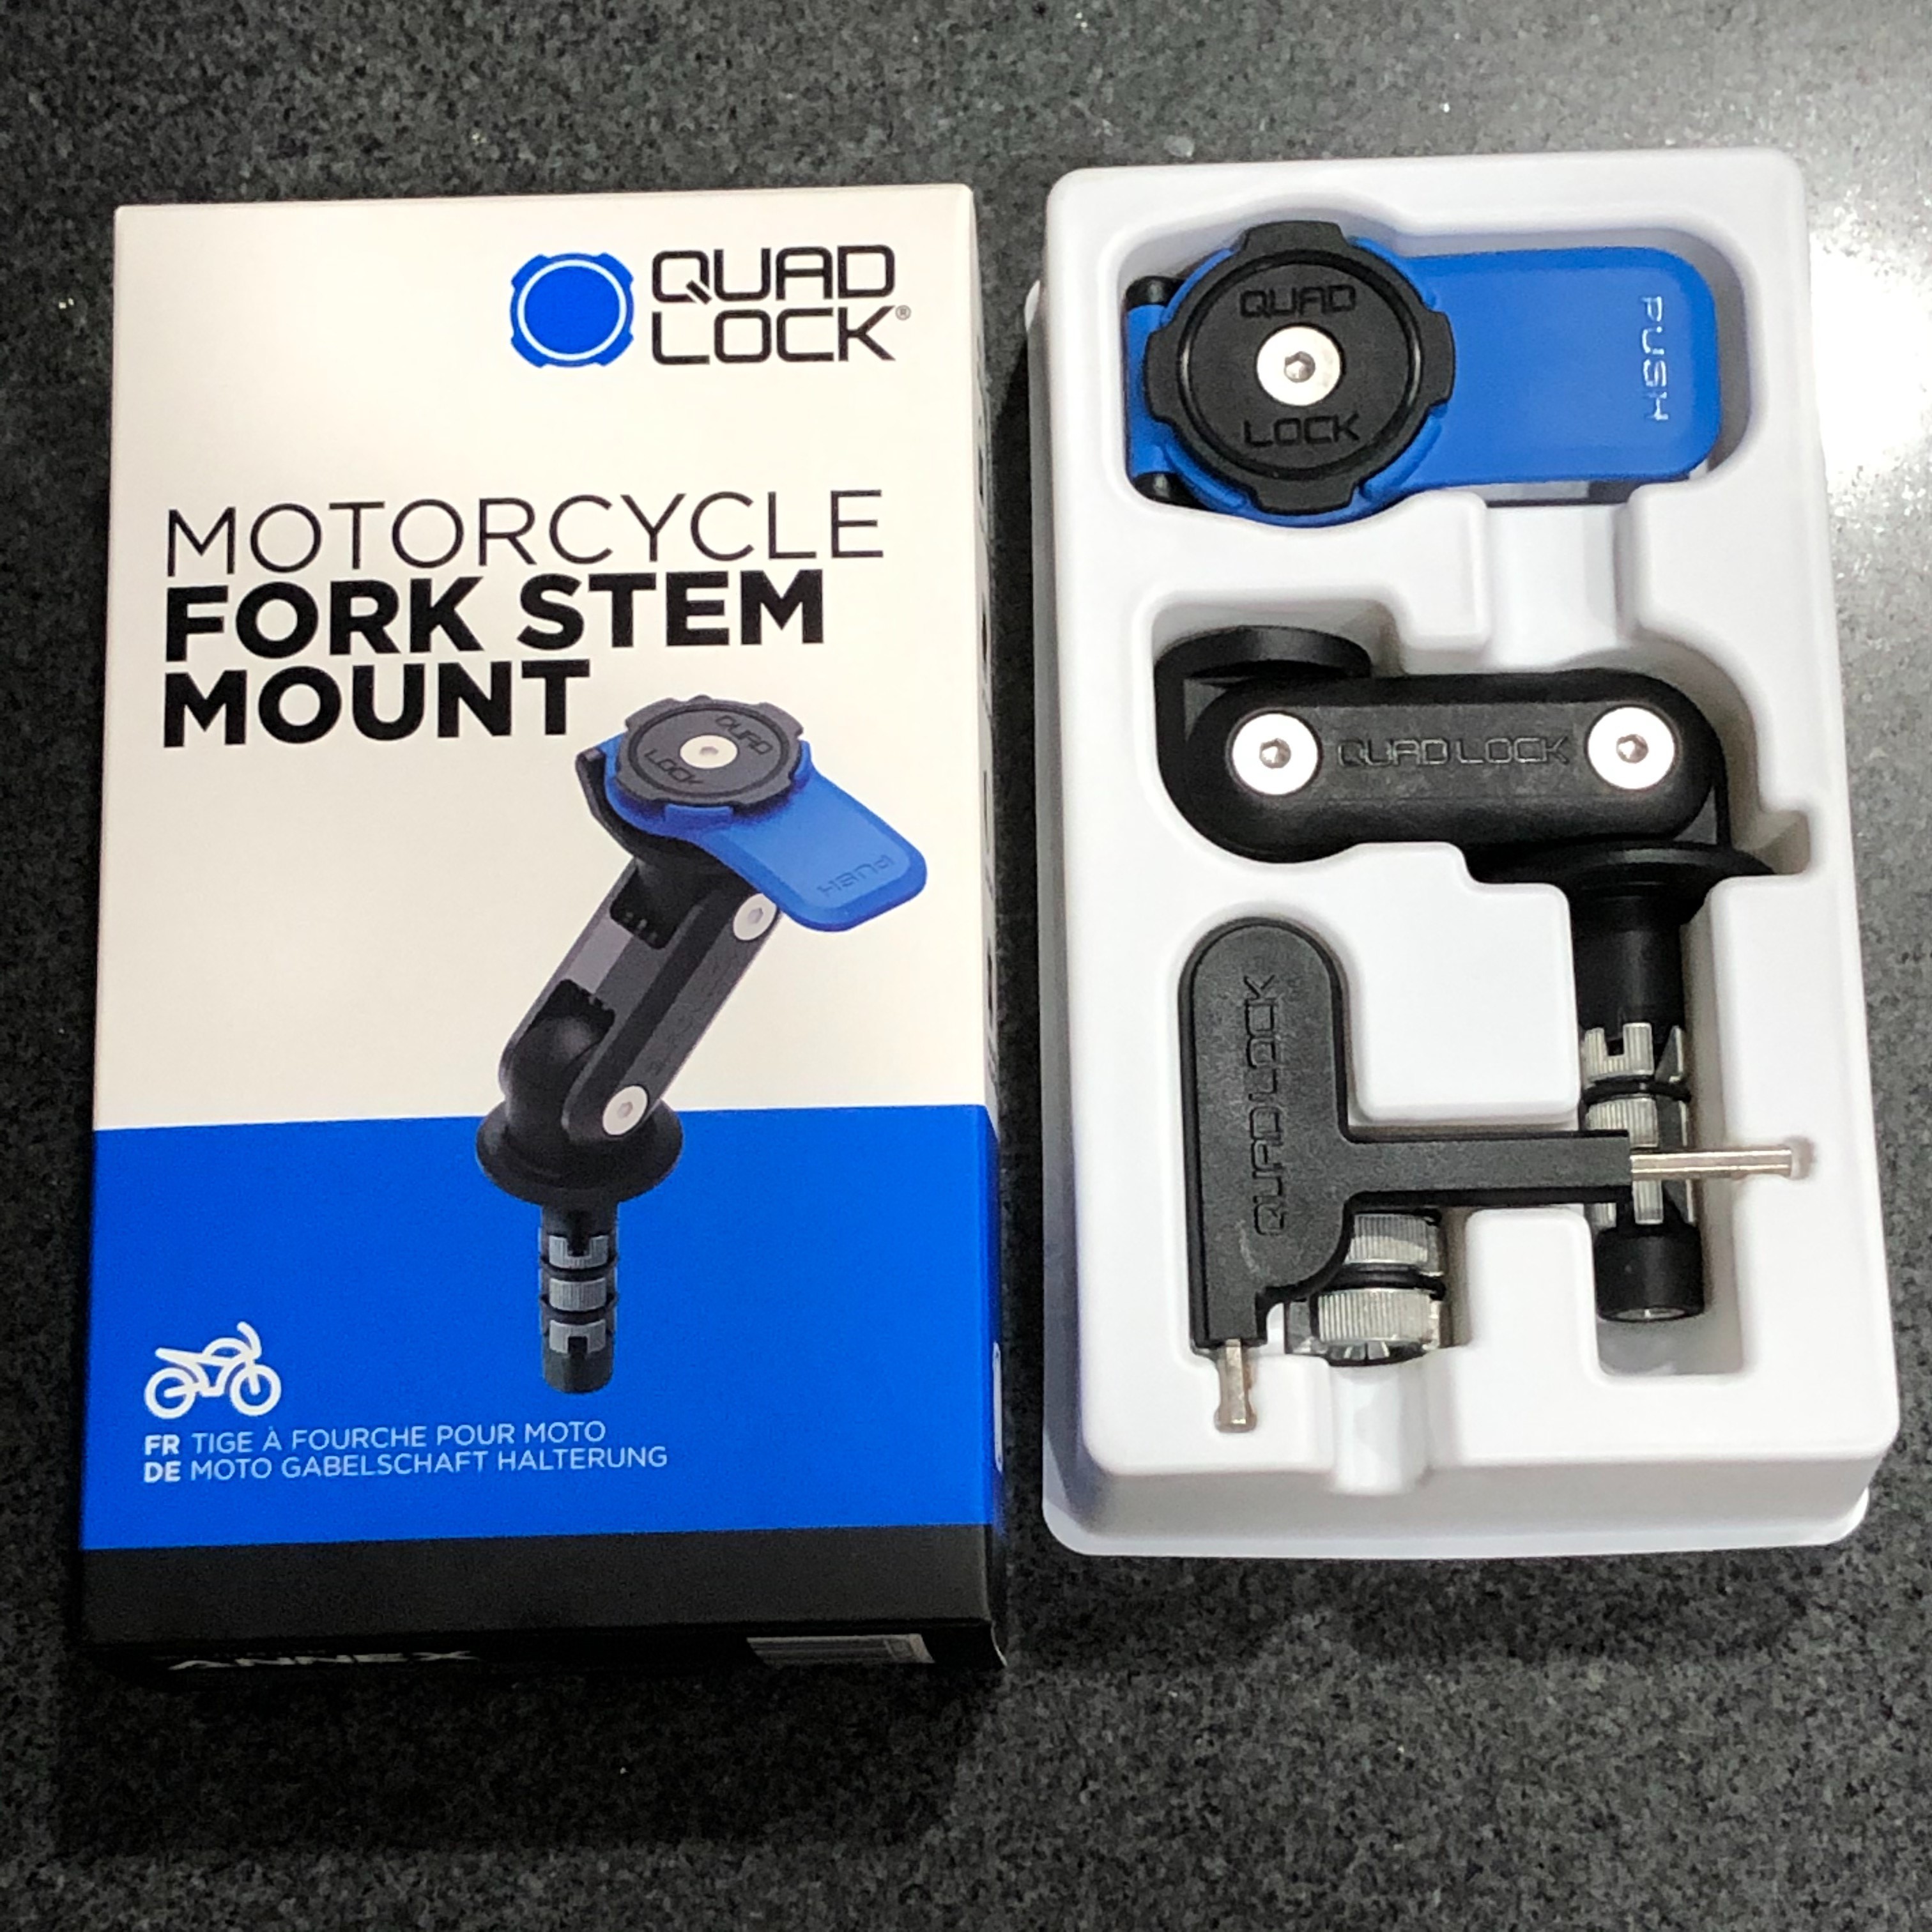 quad lock fork stem mount review